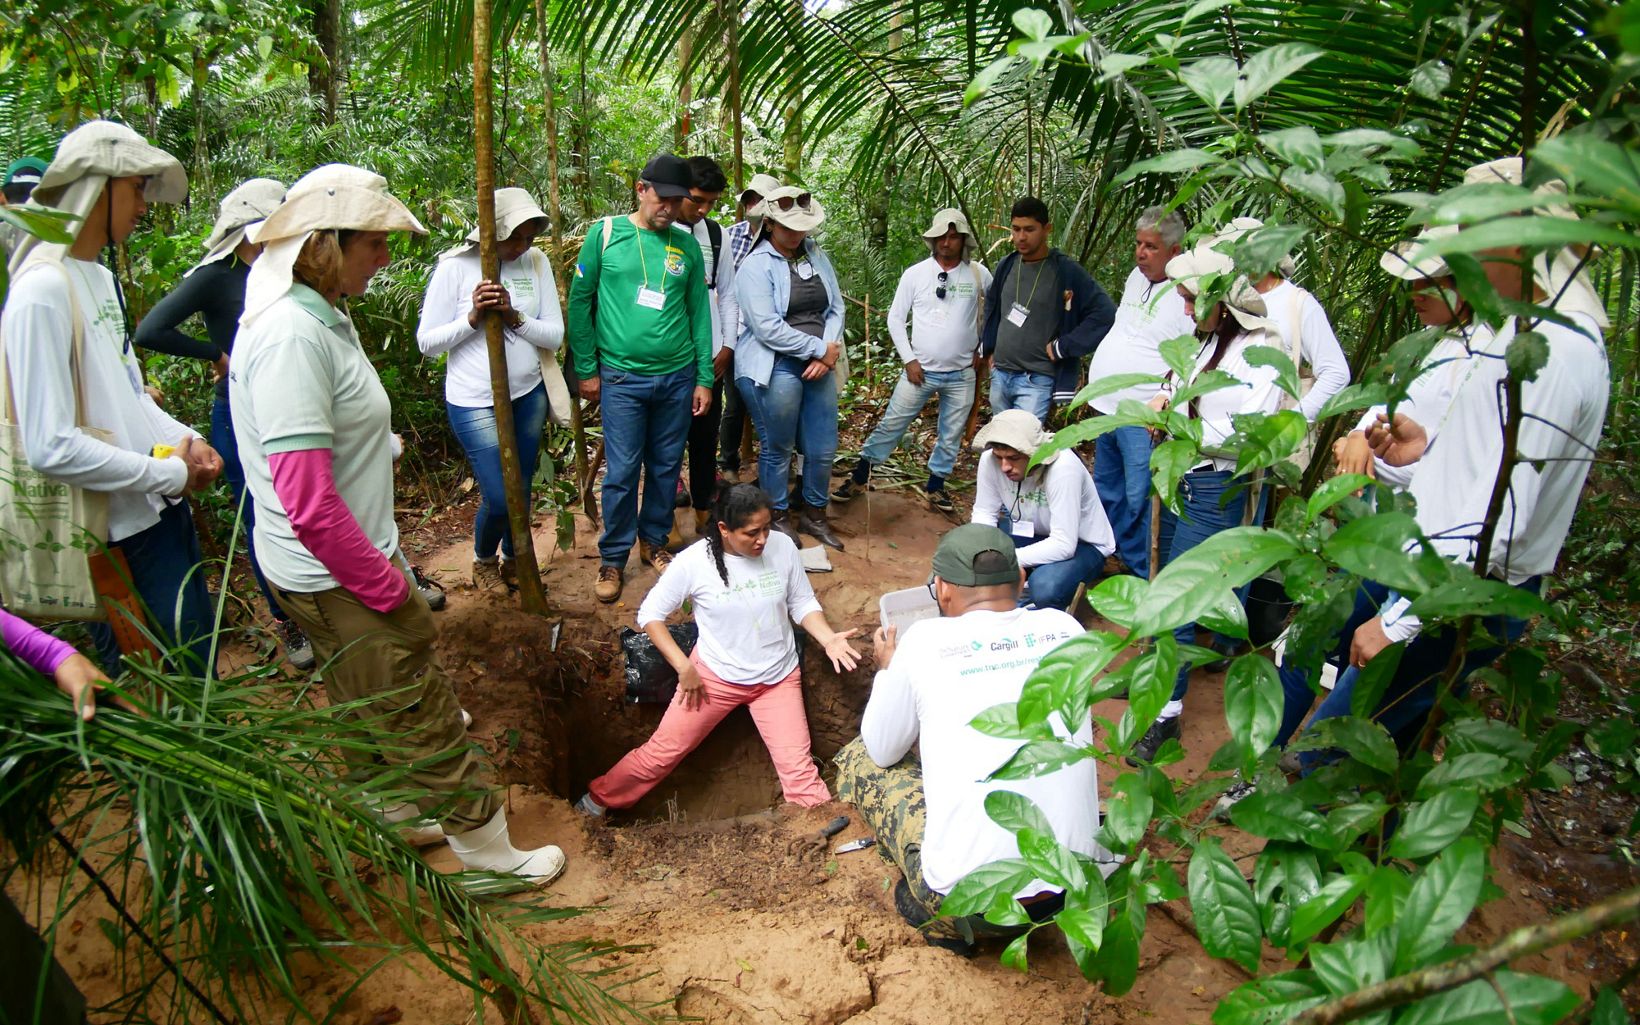 Professora demonstra uma das atividades na Reserva Extrativista Tapajós Arapiuns.